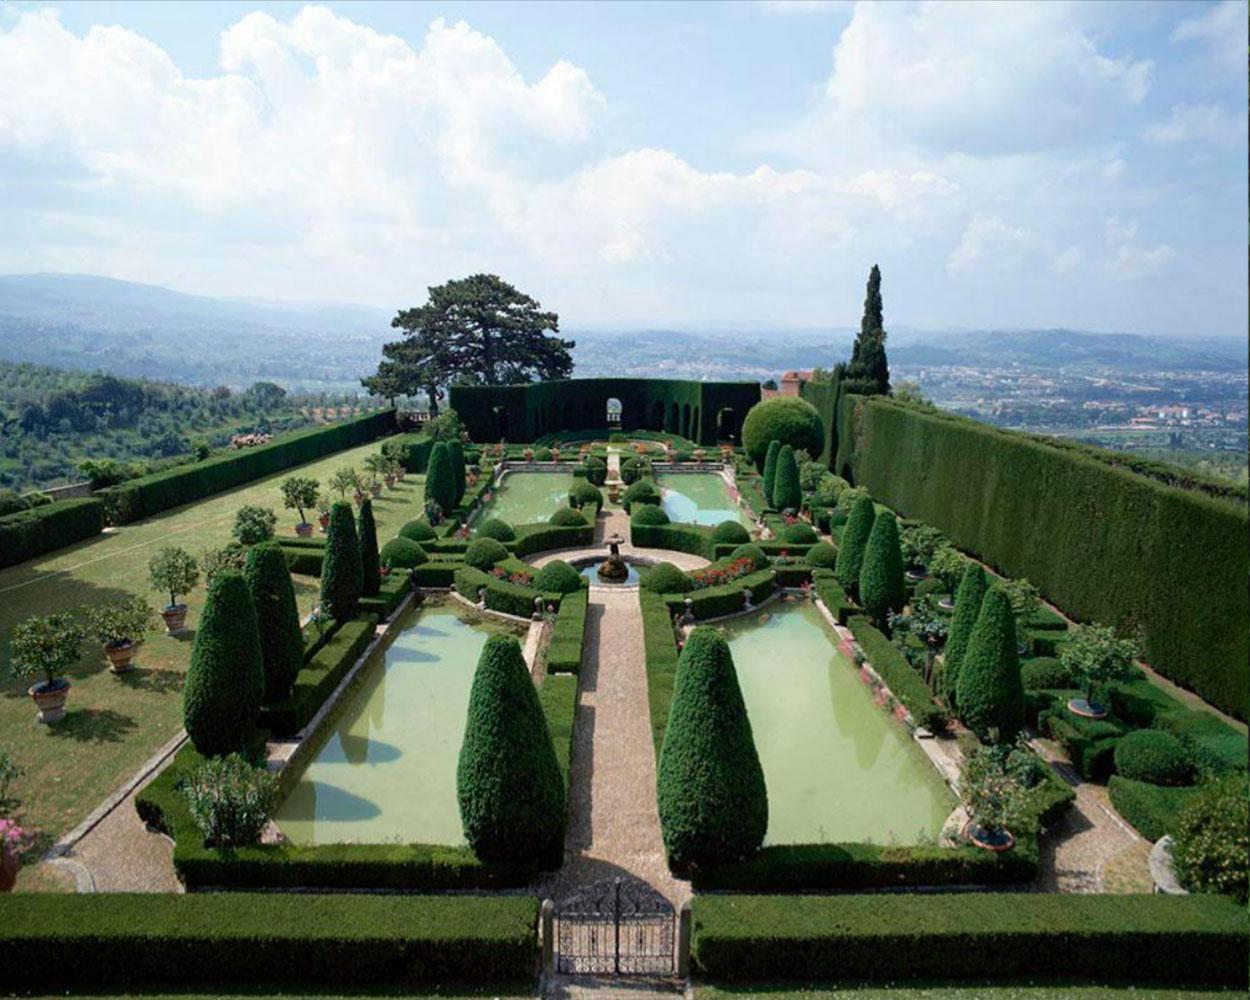 Massimo Listri Color Photograph - Giardino Villa Gamberaia a Firenze, Italy